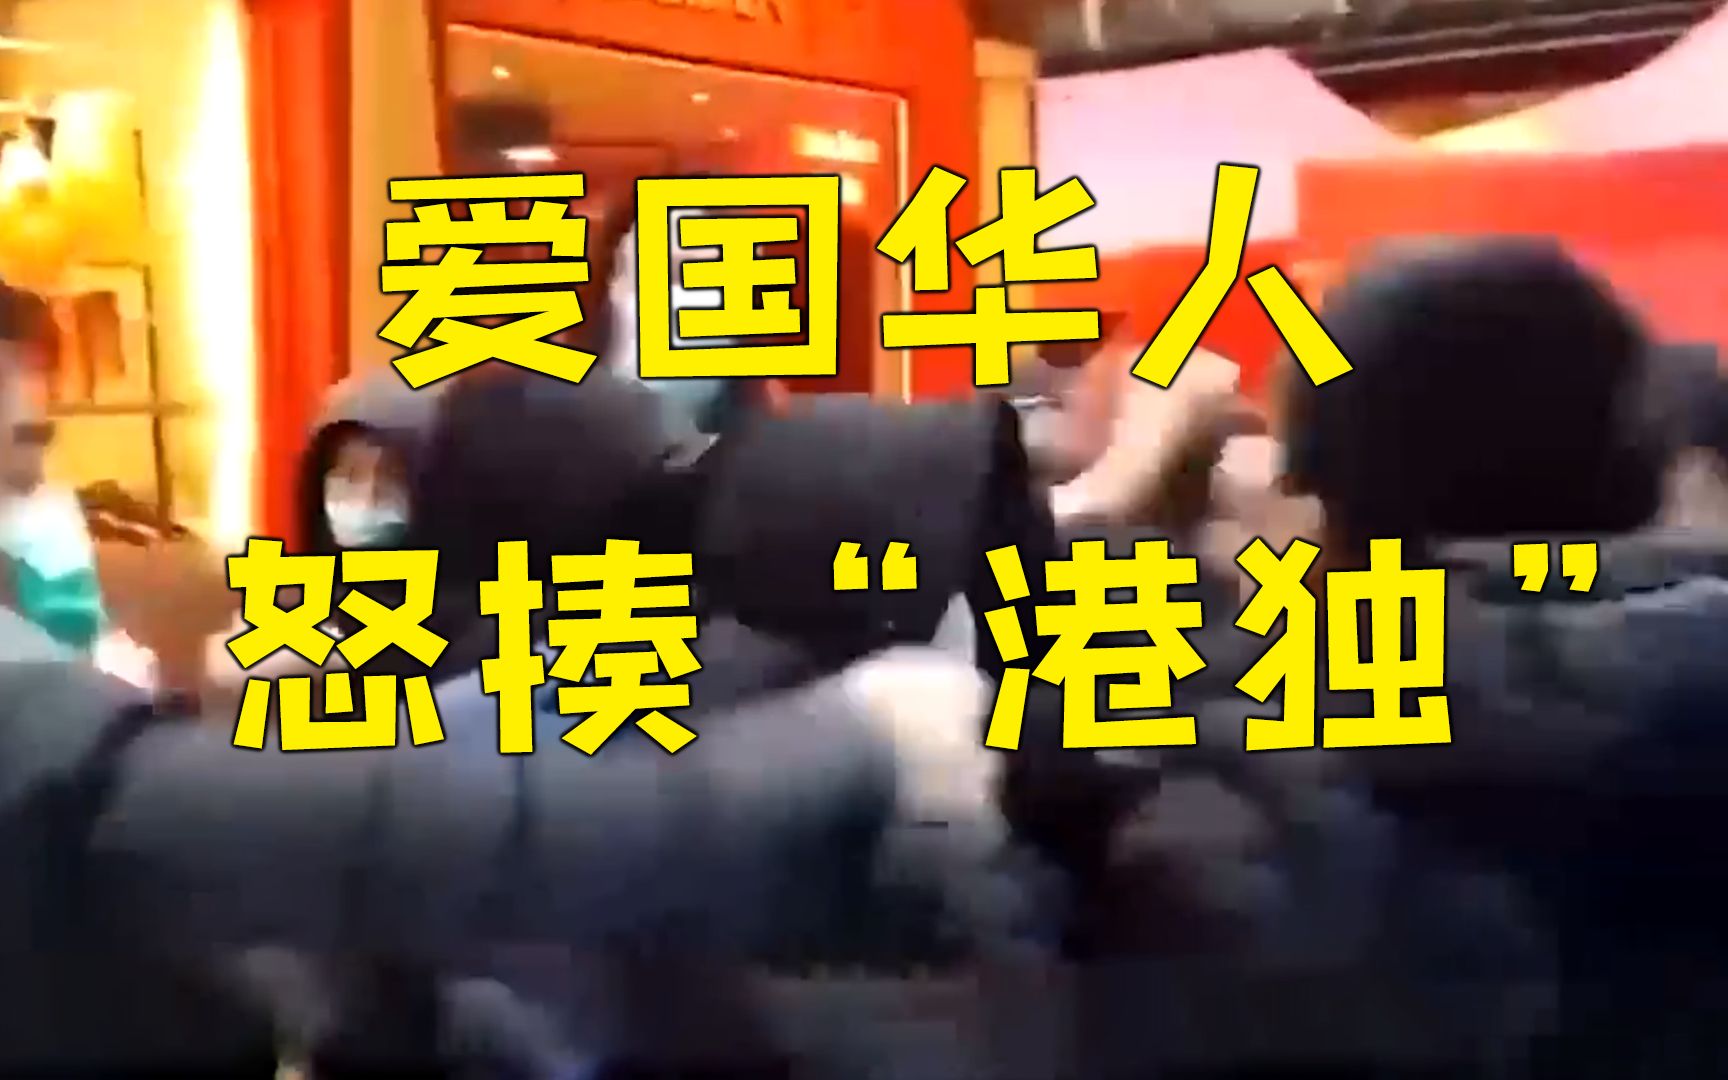 “港独”分子气焰嚣张骚扰反歧视集会 被爱国华人当场一顿怒揍